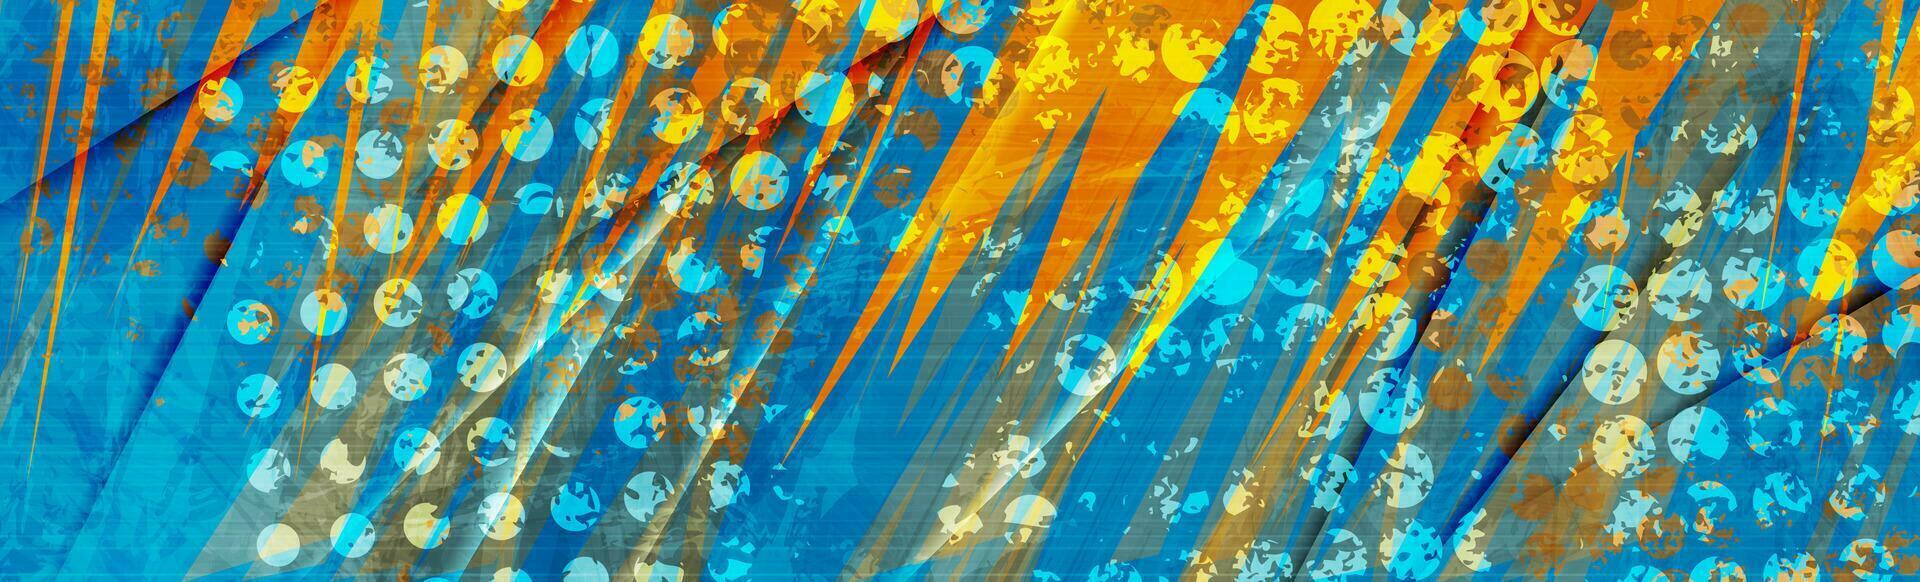 abstrakt orange och blå grunge konstnärlig bakgrund vektor